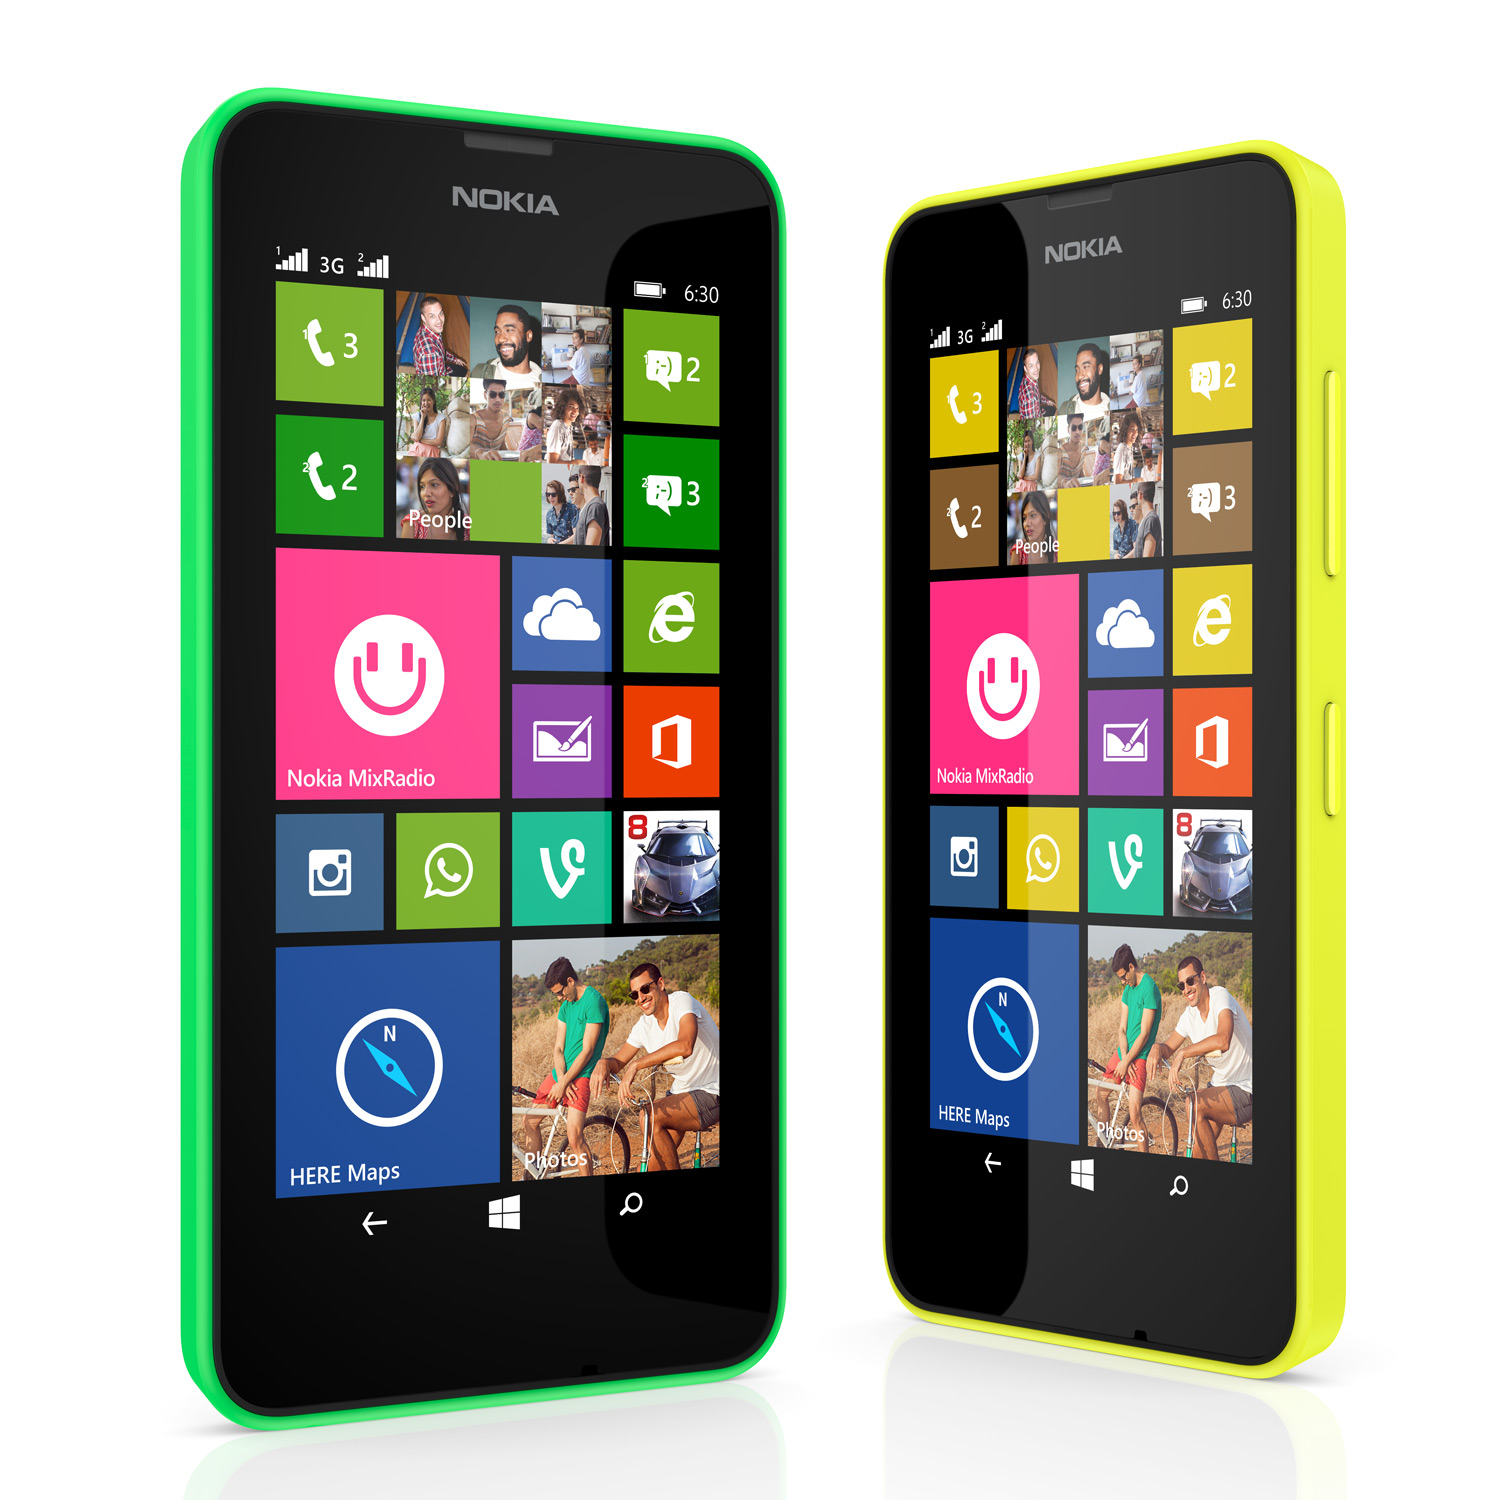 Lumia 630 com TV digital chega ao Brasil por R$ 699